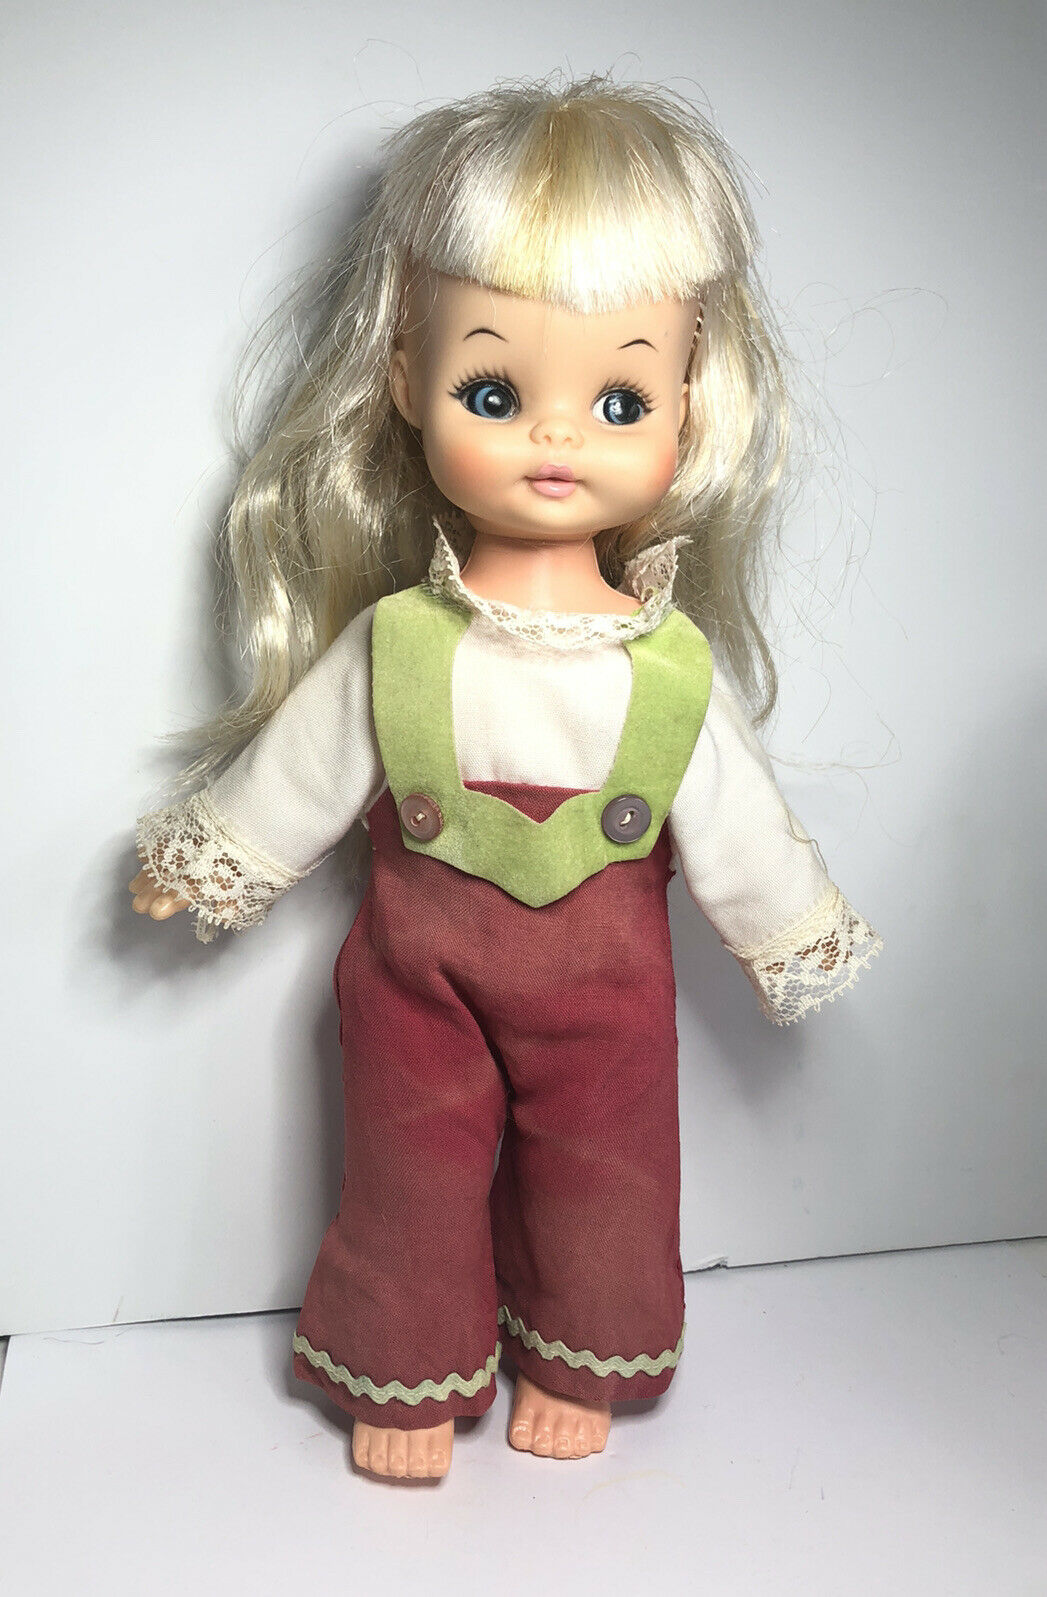 Adorable Vintage Horsman Blonde Girl Doll Approx 11”